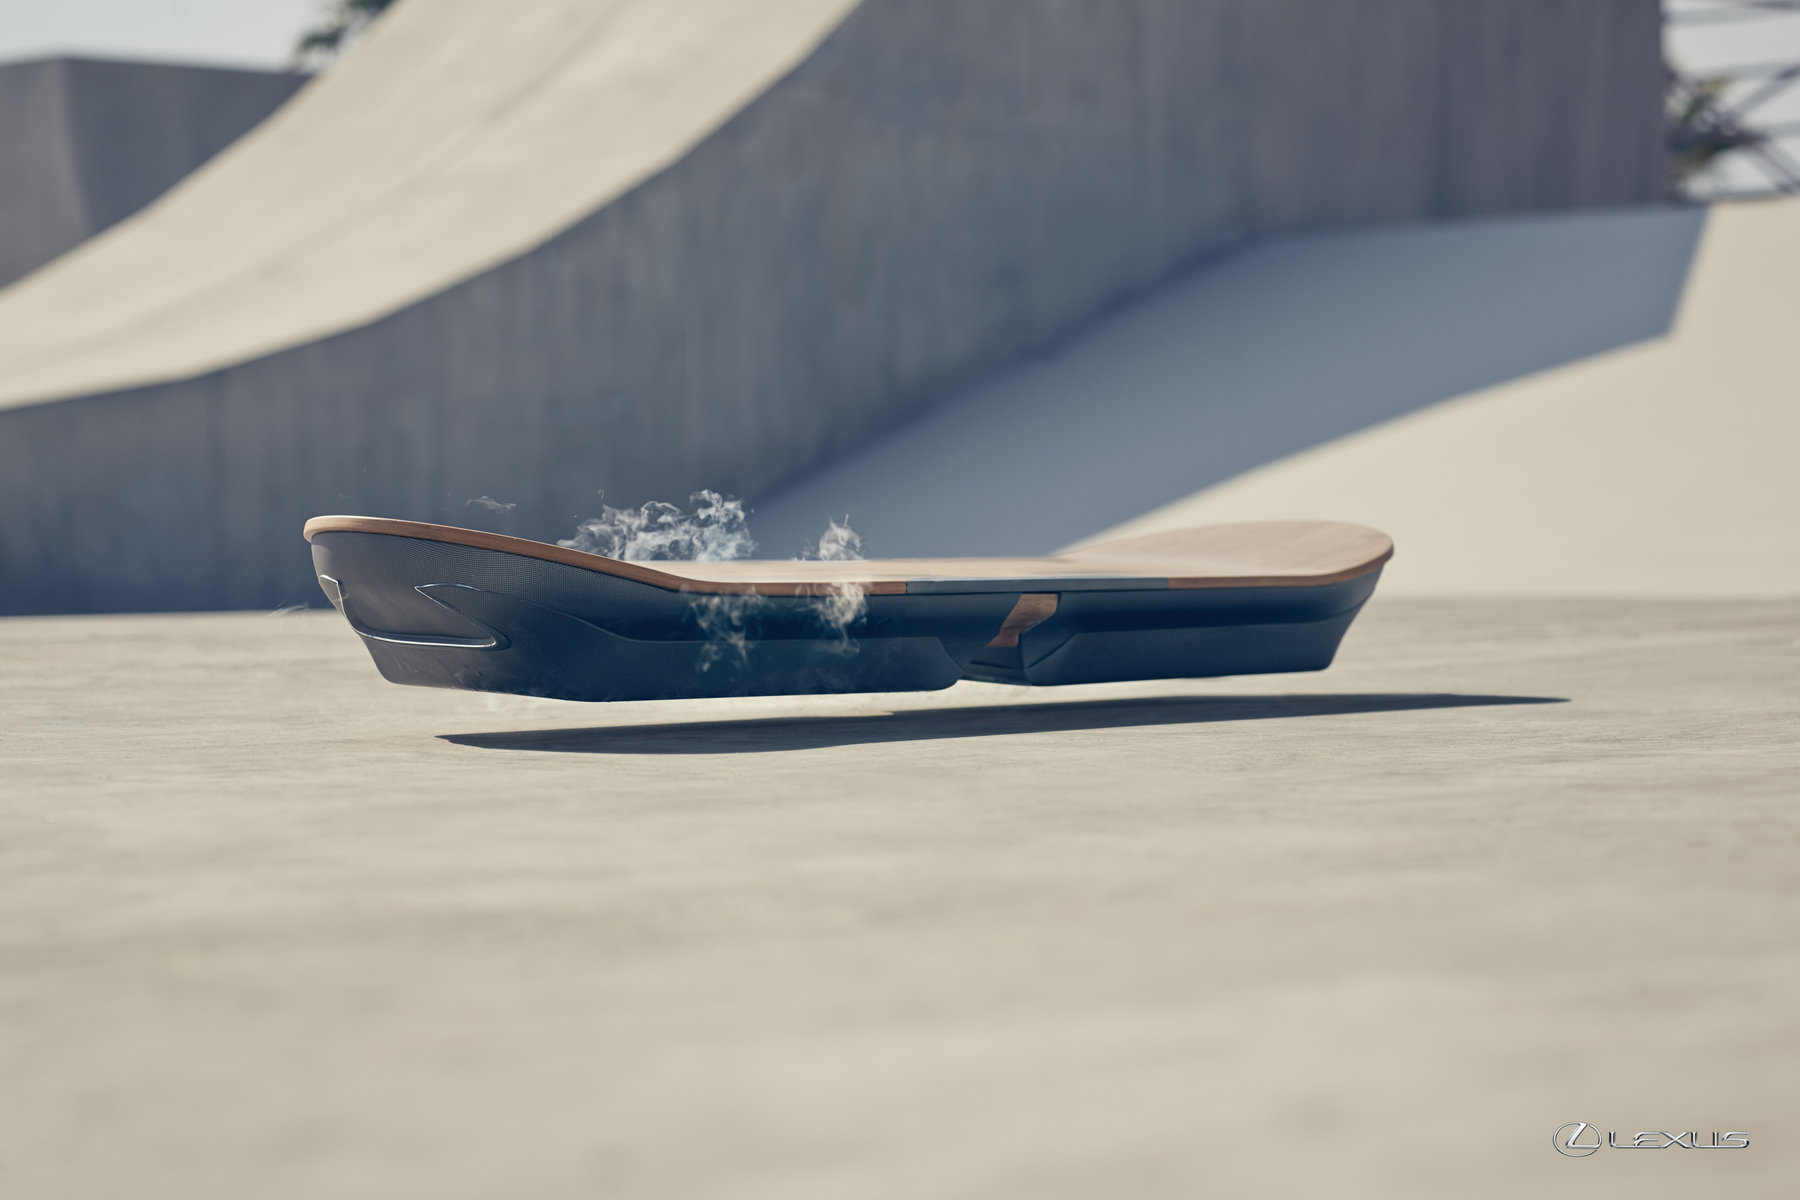 Lexus crea el Hoverboard, el monopatín volador